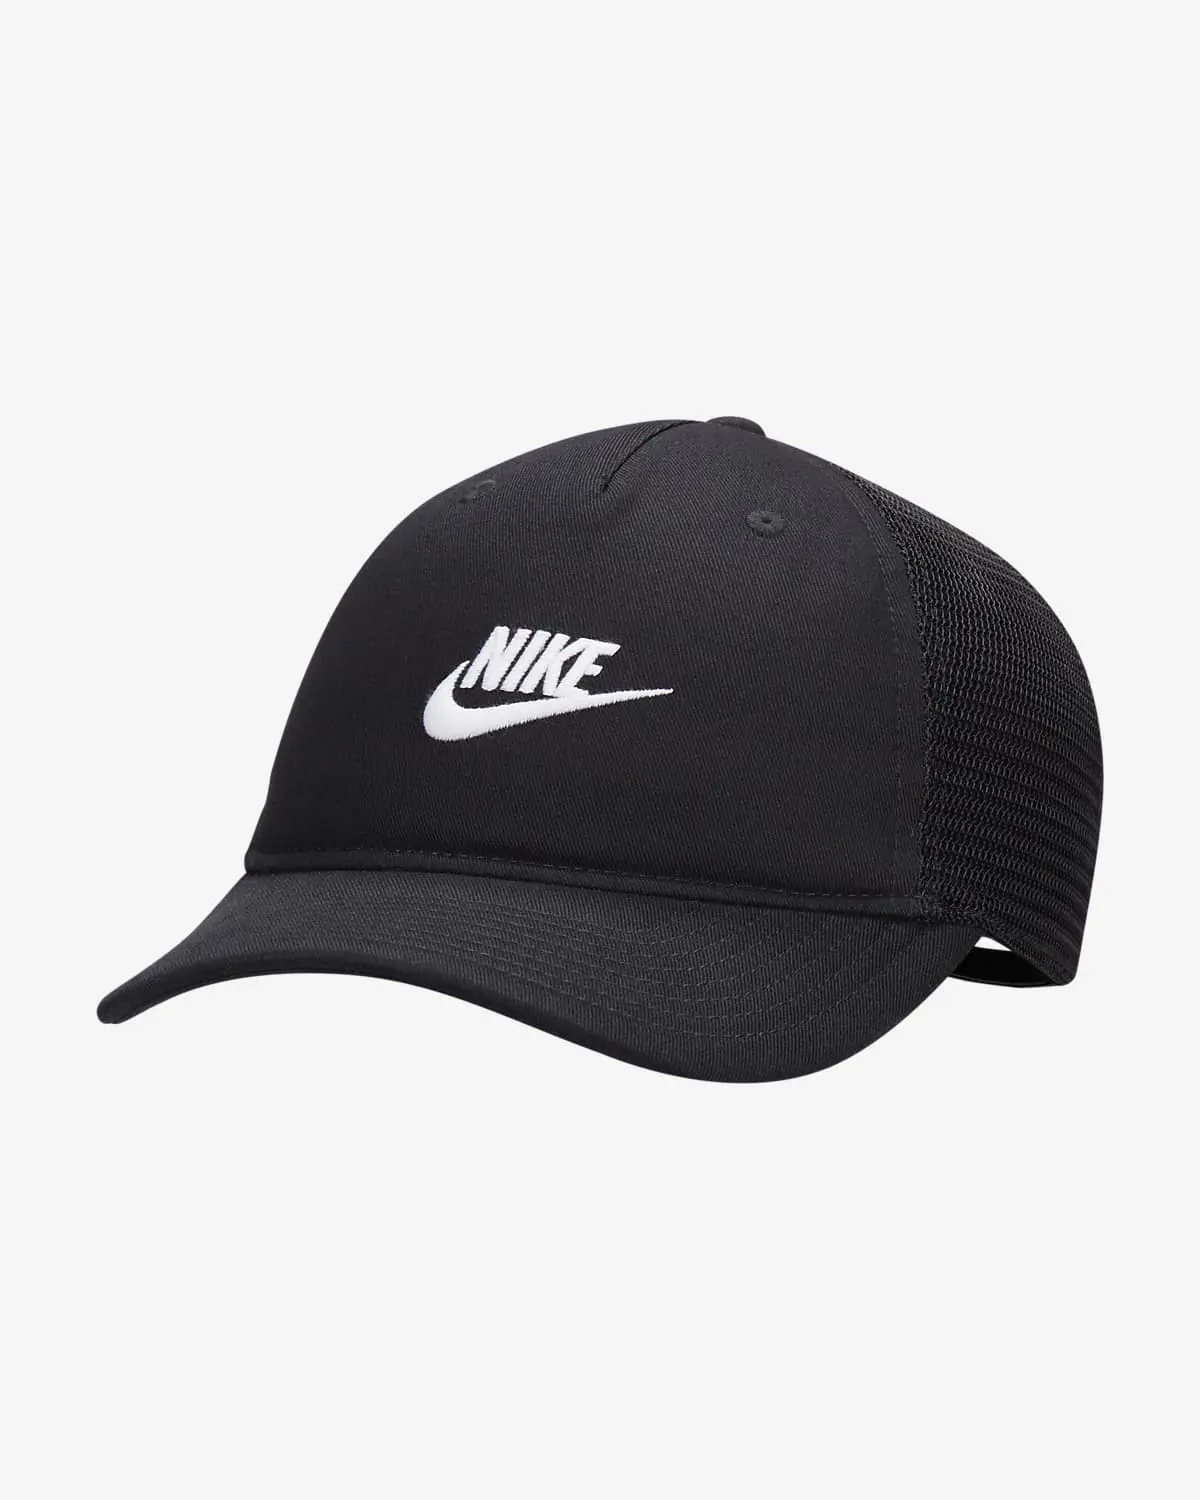 Nike Rise Cap. 1